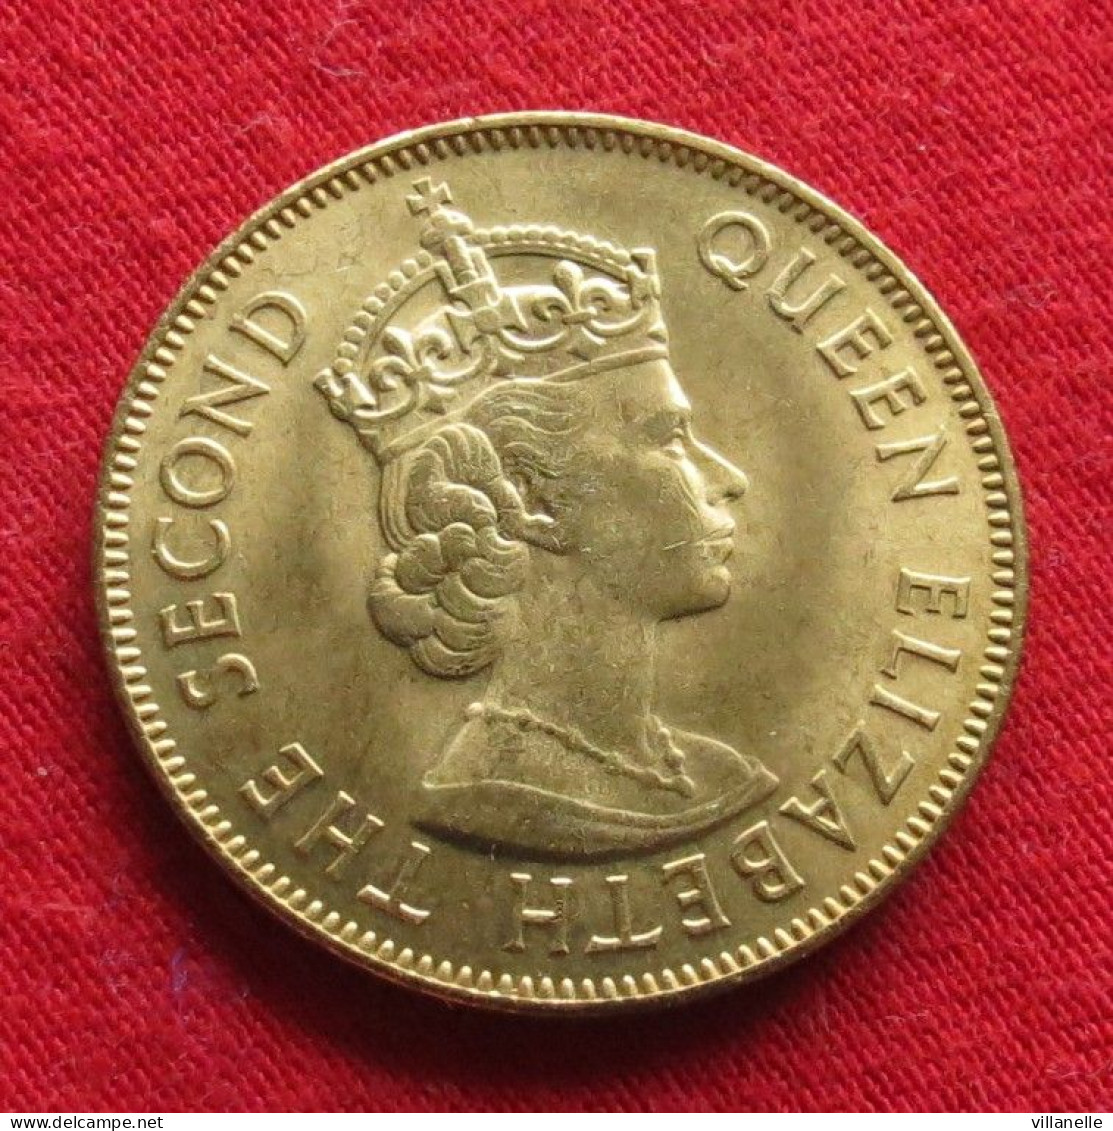 Jamaica 1 Penny 1962  Jamaique Jamaika  UNC ºº - Jamaique